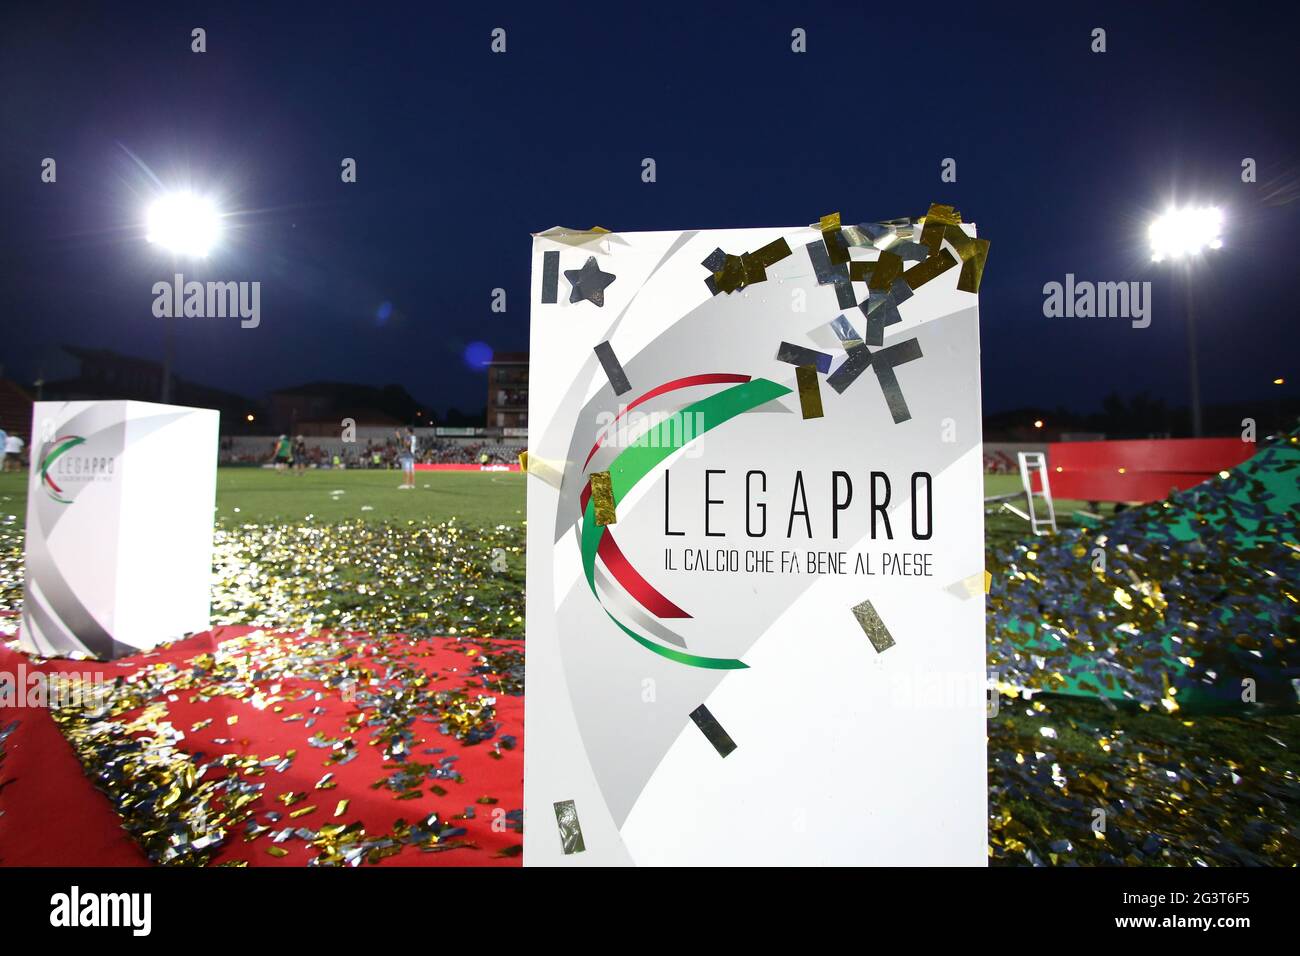 Lega pro Banque de photographies et d'images à haute résolution - Alamy